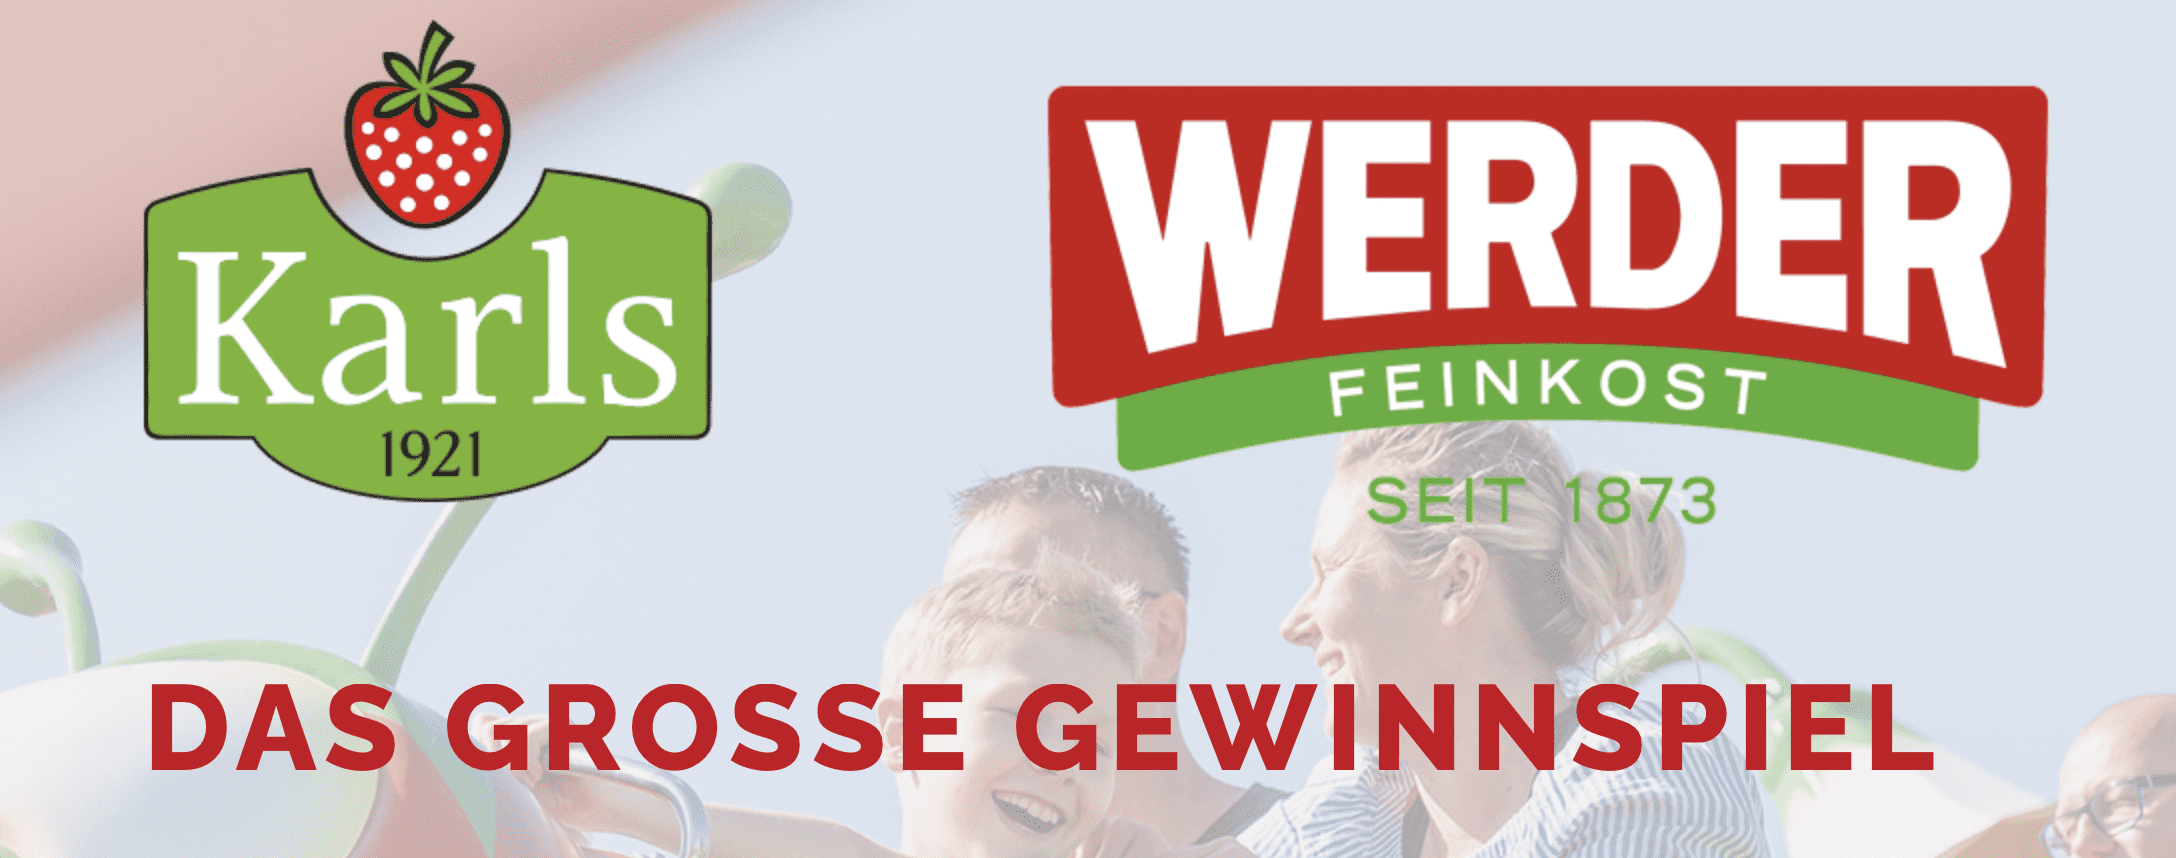 case_Werder Feinkost_Gewinnspiel